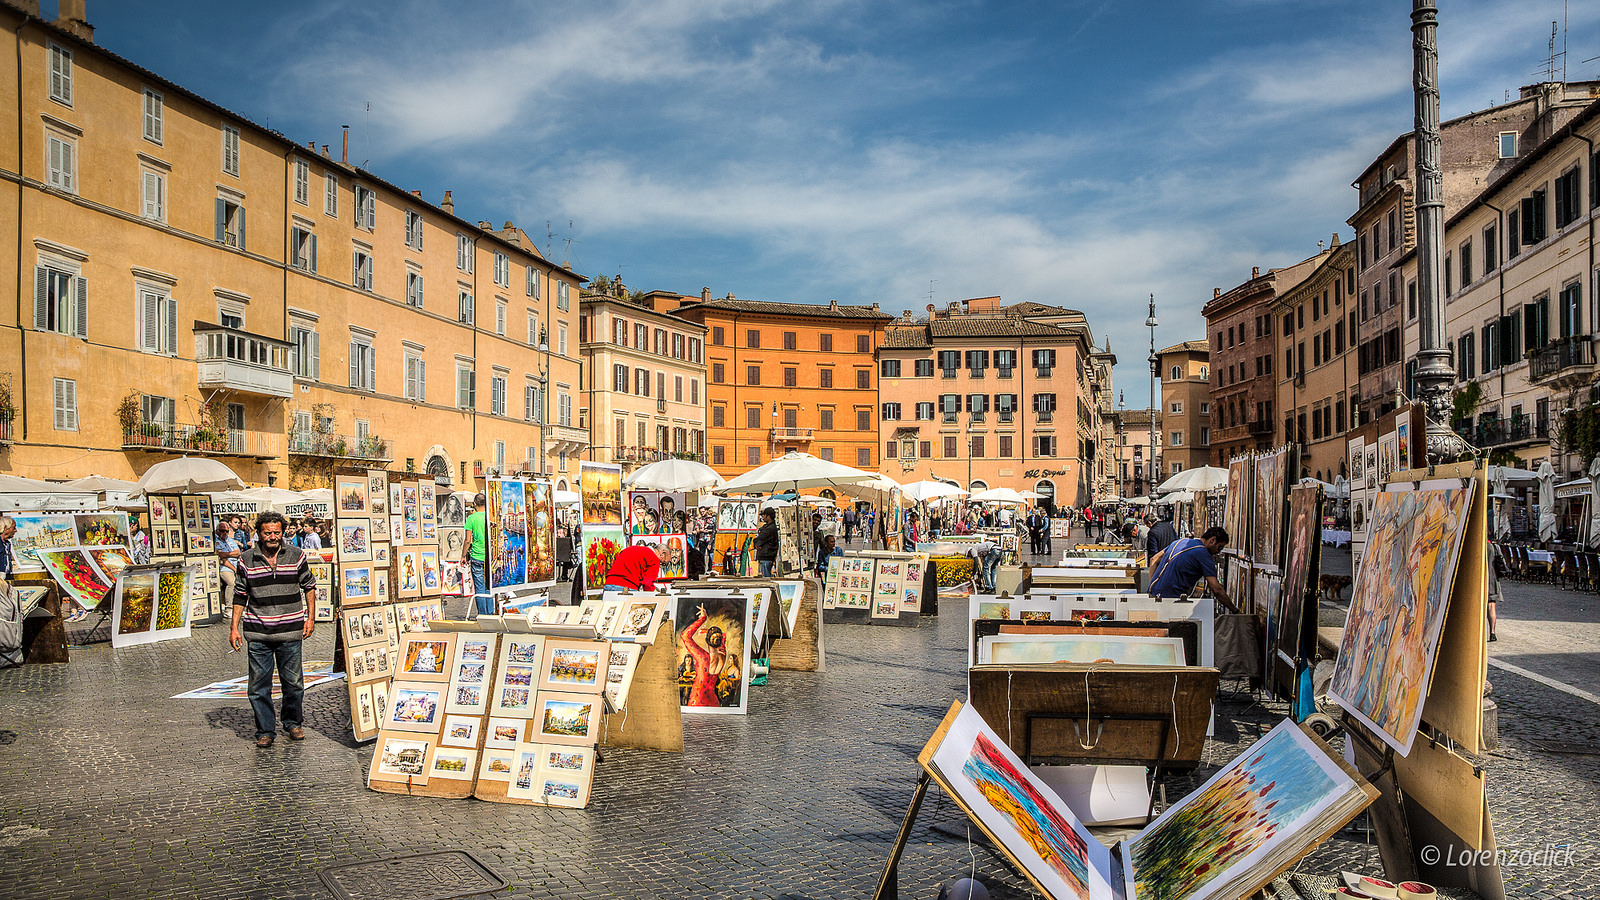 Trg Navona u Rimu - slikarska kolonija (foto: LorenzoClick)